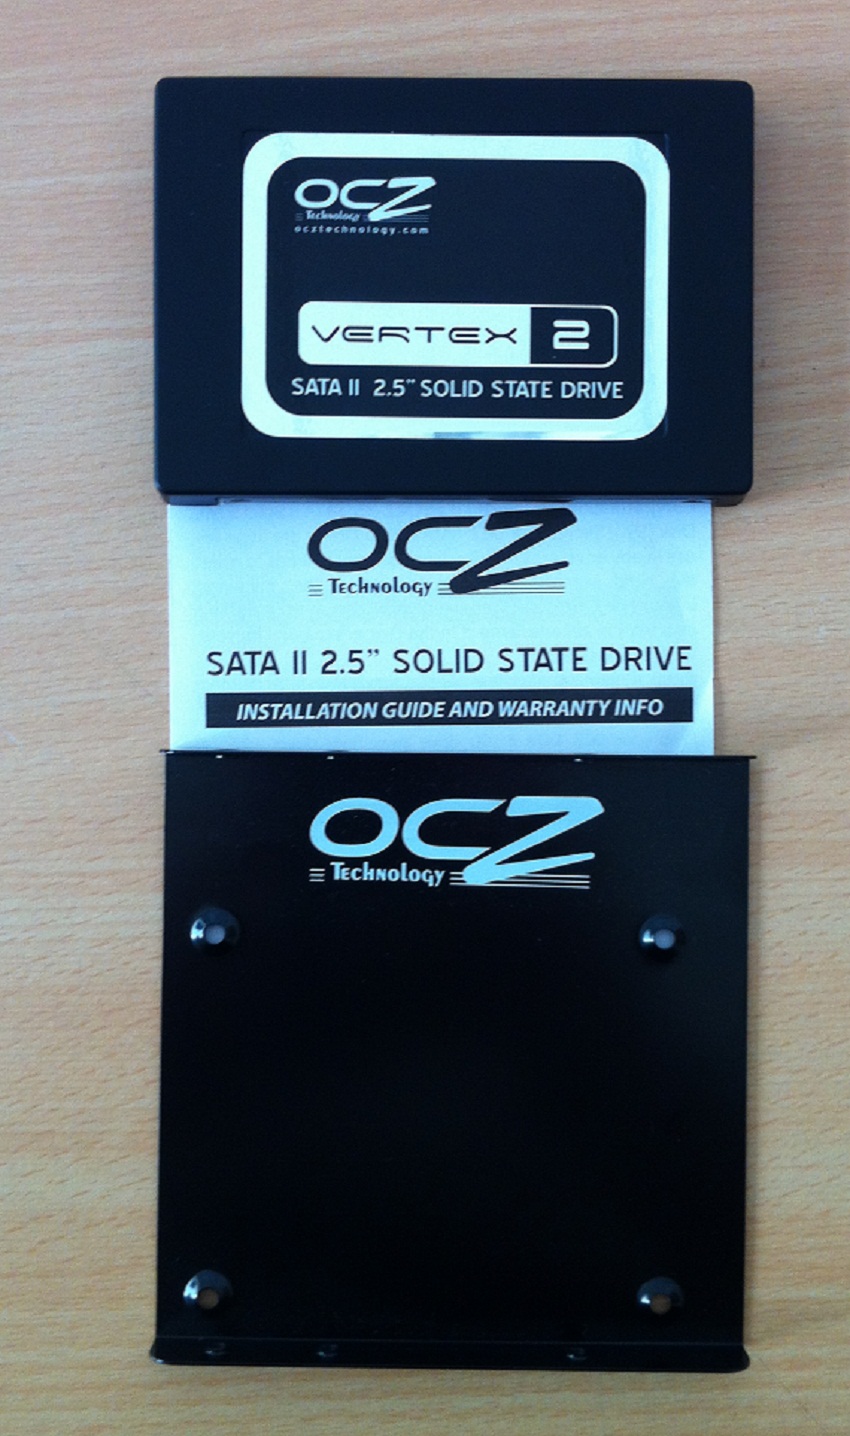  Satılık OCZ 60GB SSD.